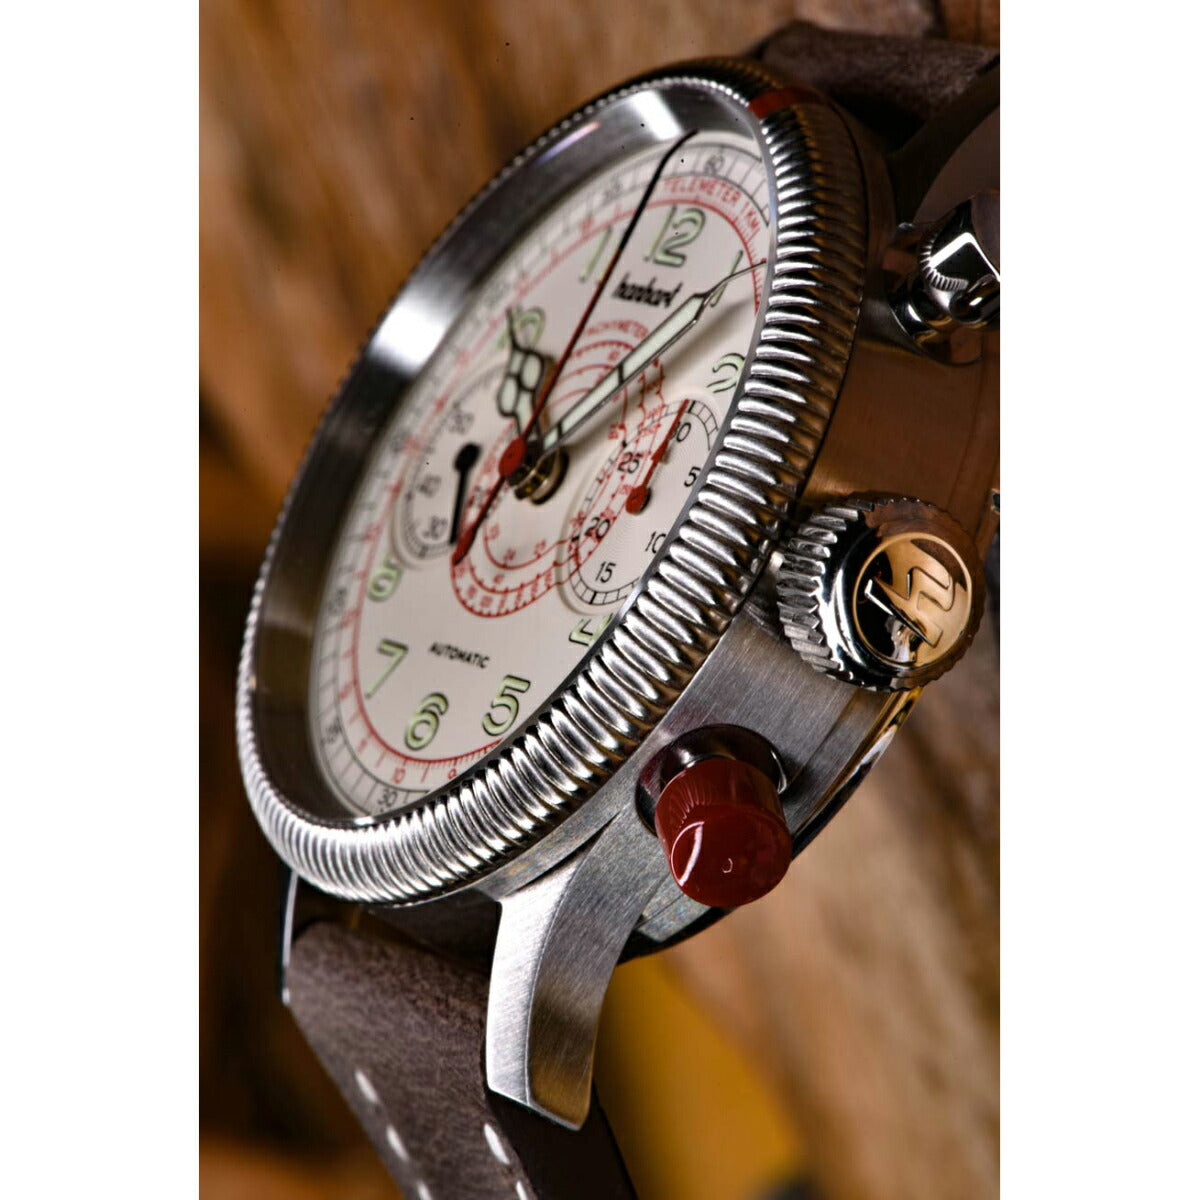 ハンハルト hanhart 腕時計 メンズ パイオニア タキテレ PIONEER TachyTele 自動巻き 1H712.200-0010